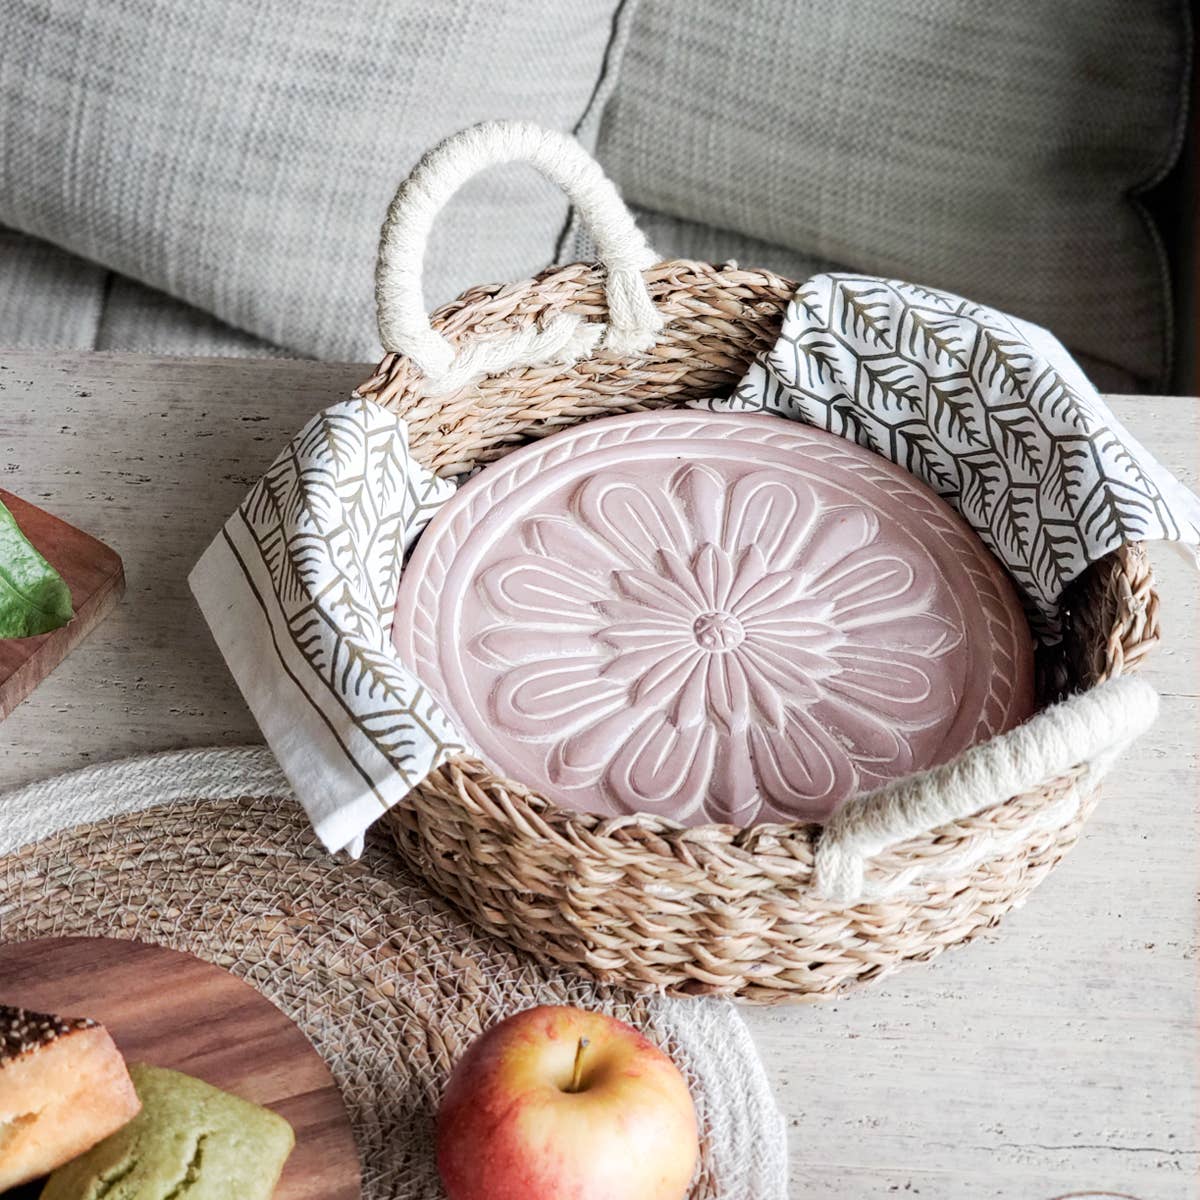 Handmade Bread Warmer & Wicker Basket - Vintage flower